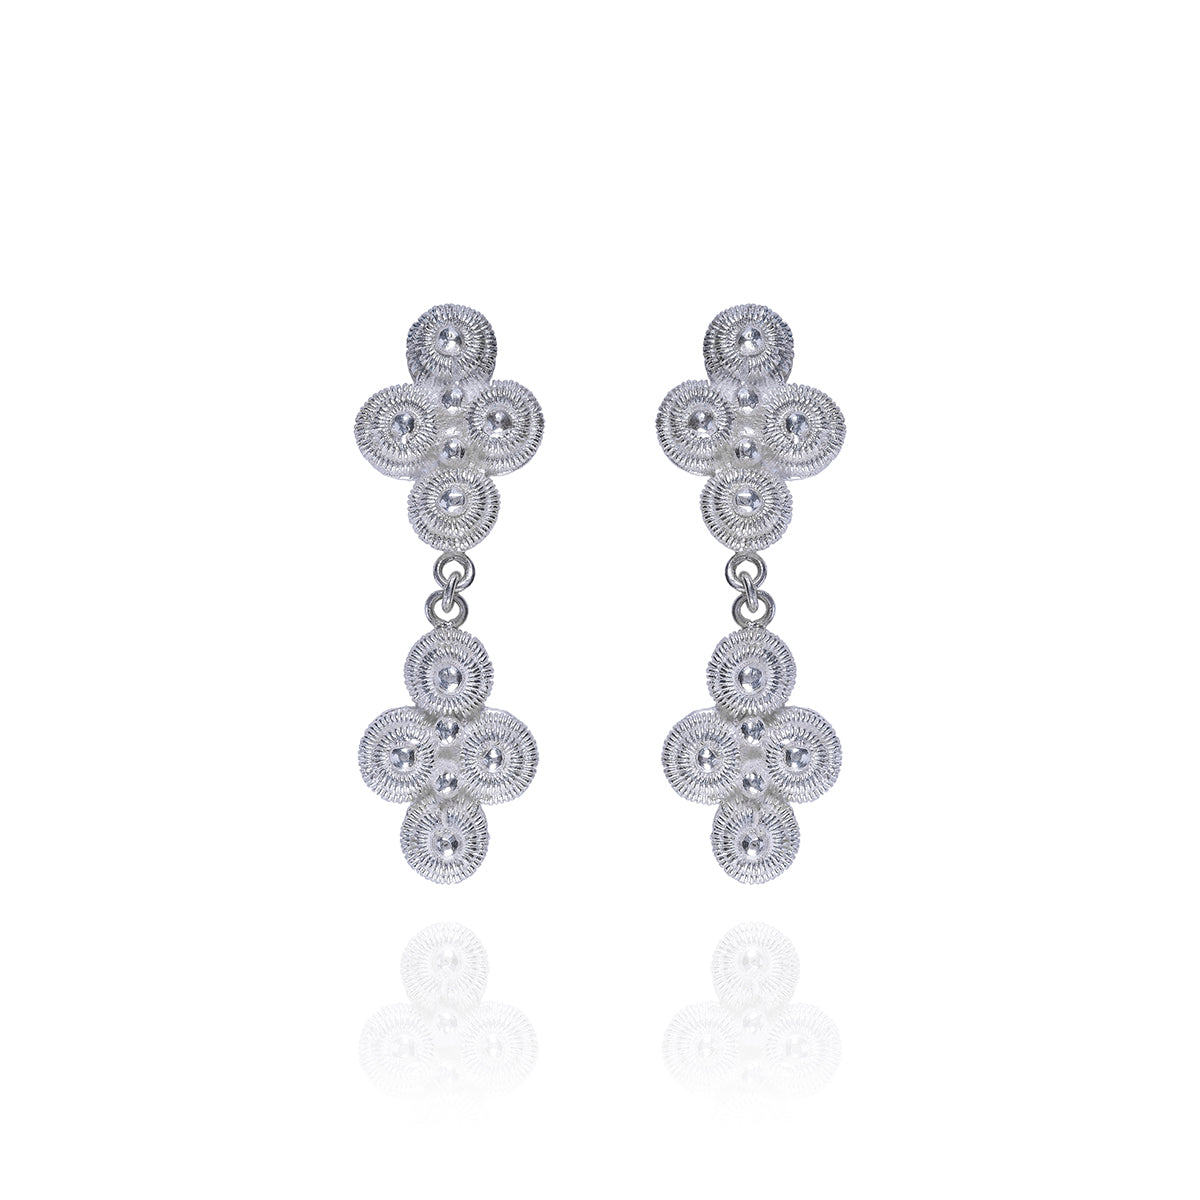 Silver Knots Shaped Earrings - fareastjewelry